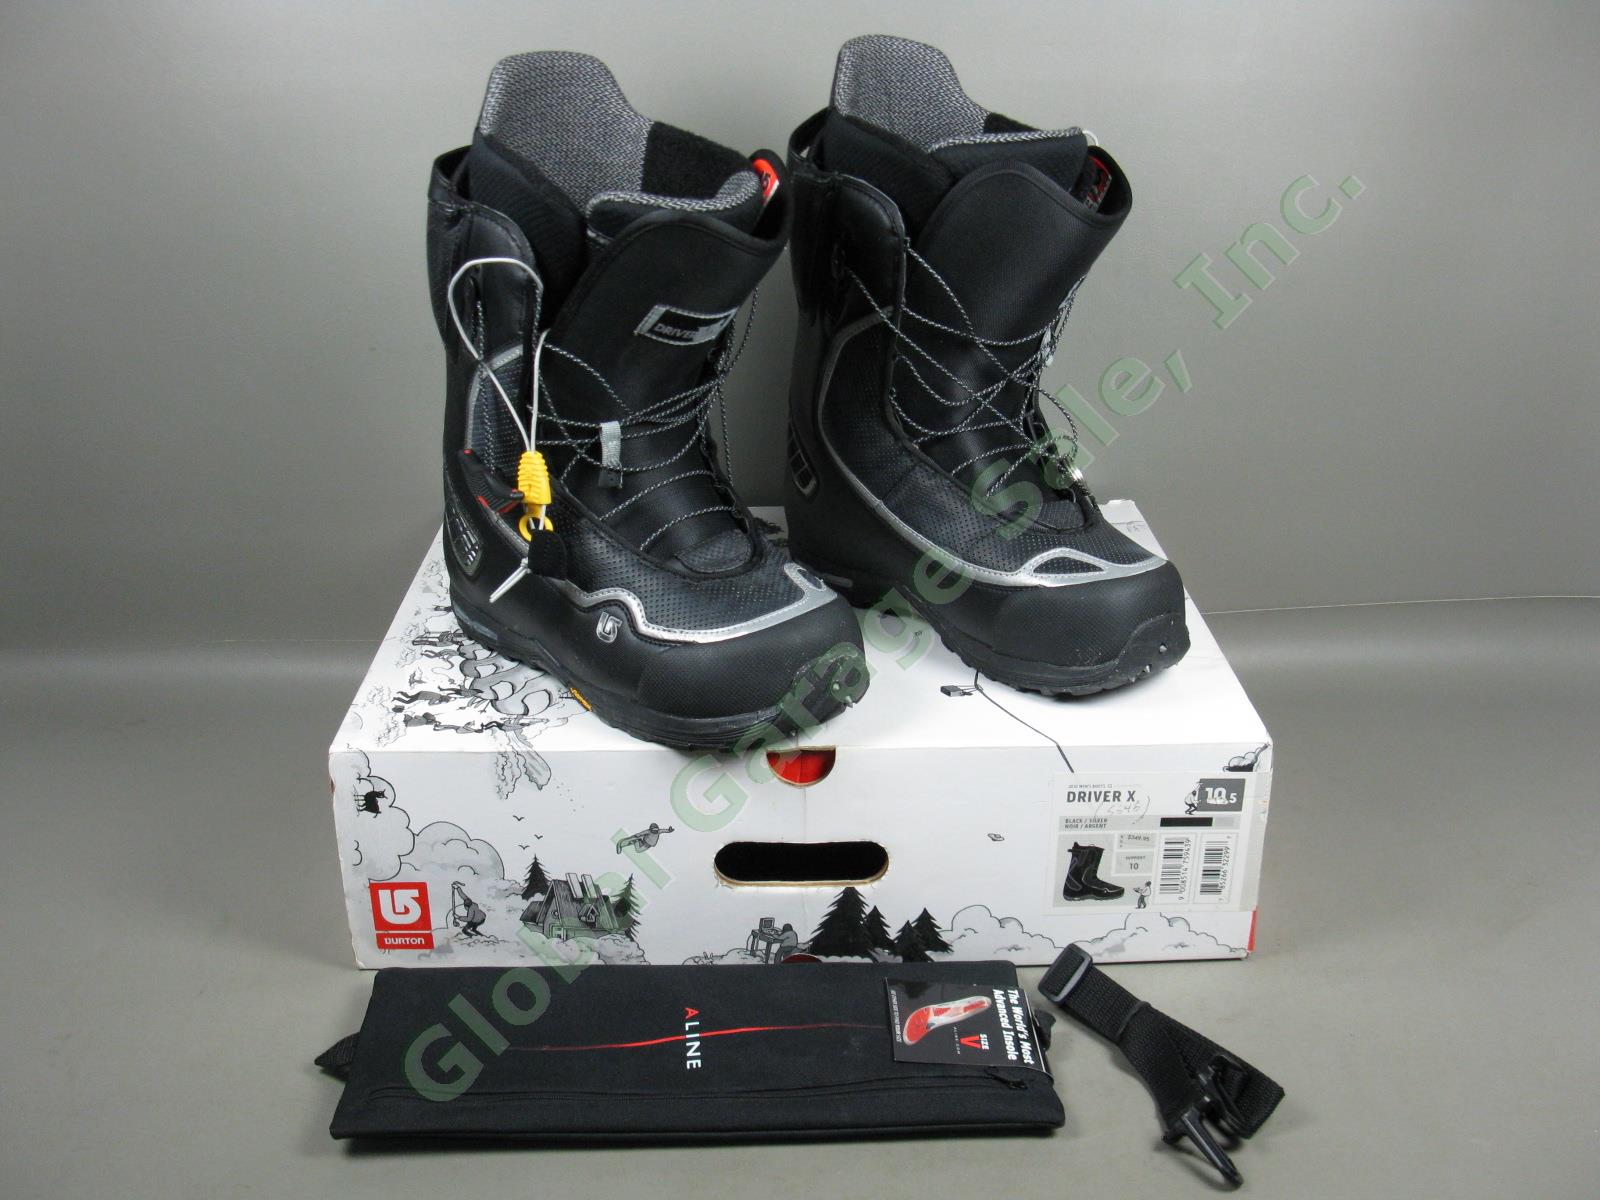 Mens Black/Silver Burton Driver X Snowboard Boots 10.5 W/ Box +$60 Aline Insoles